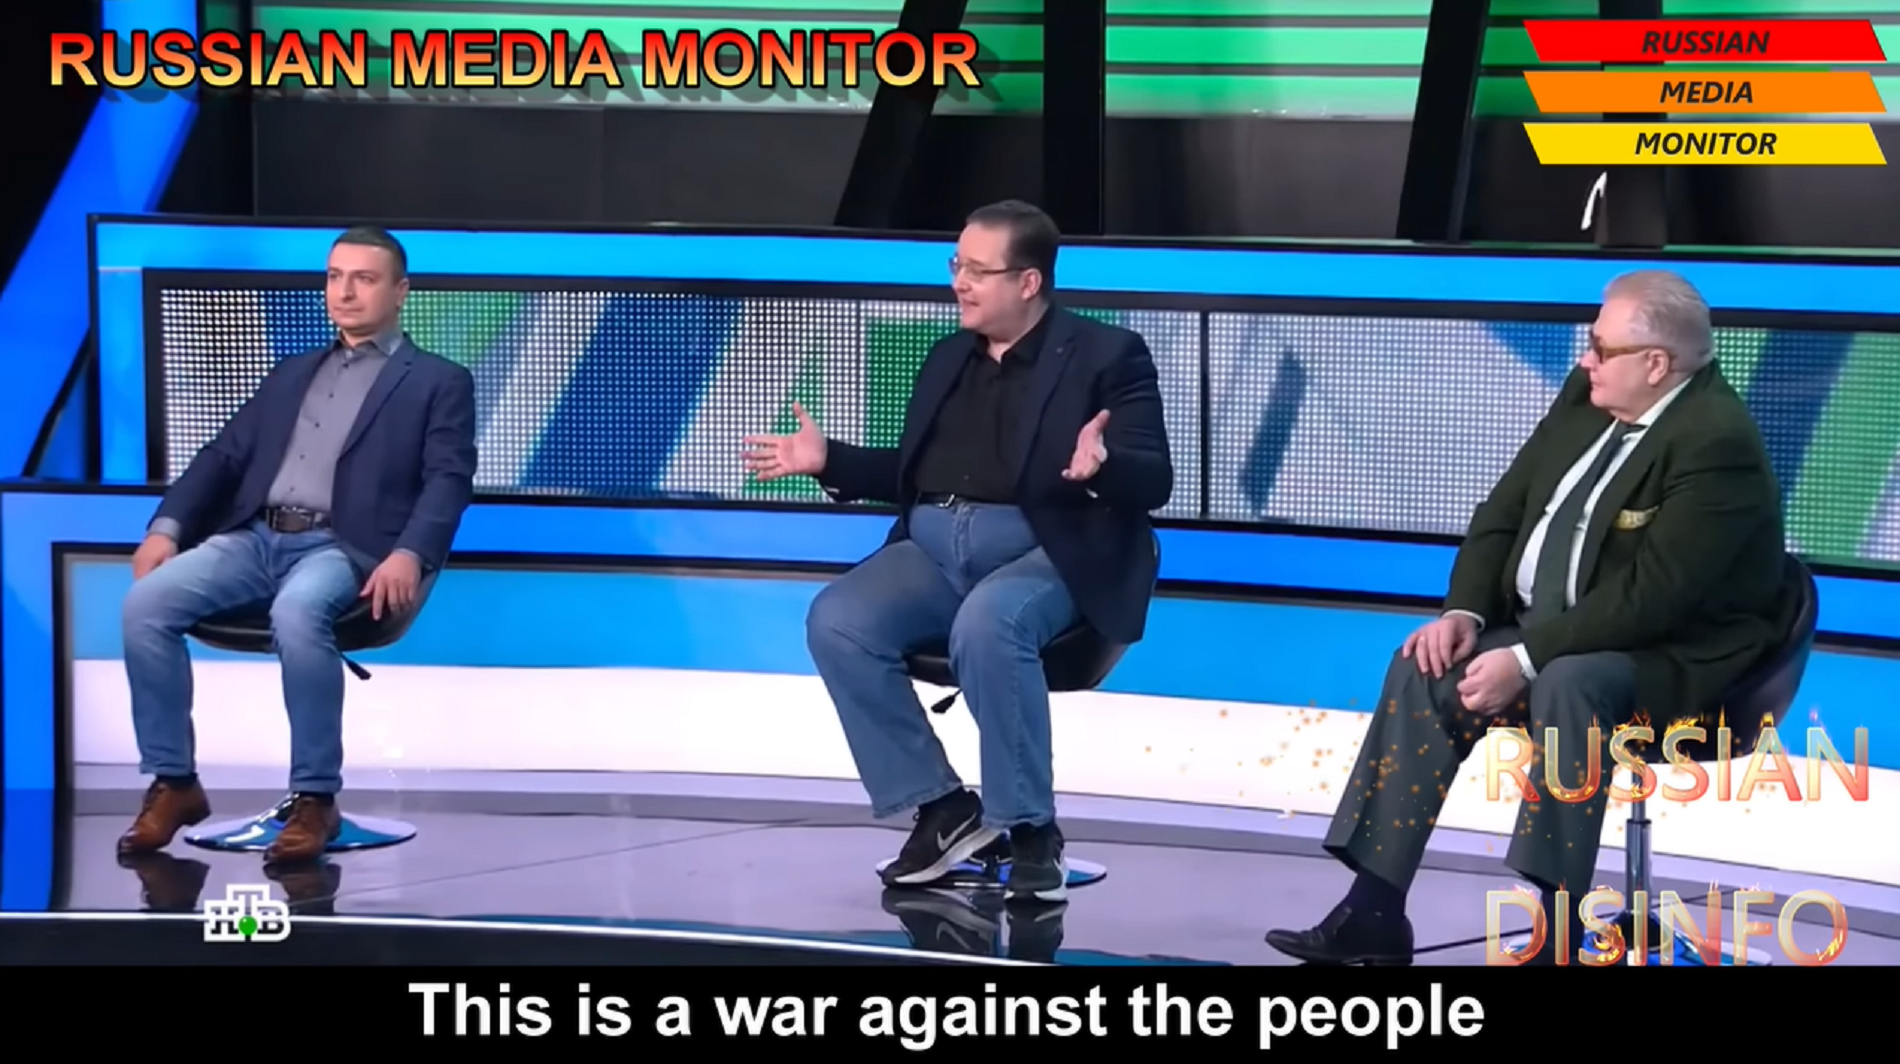 Tensión en la TV rusa por un tertuliano antiguerra: "Esto es crueldad y sadismo contra los civiles"